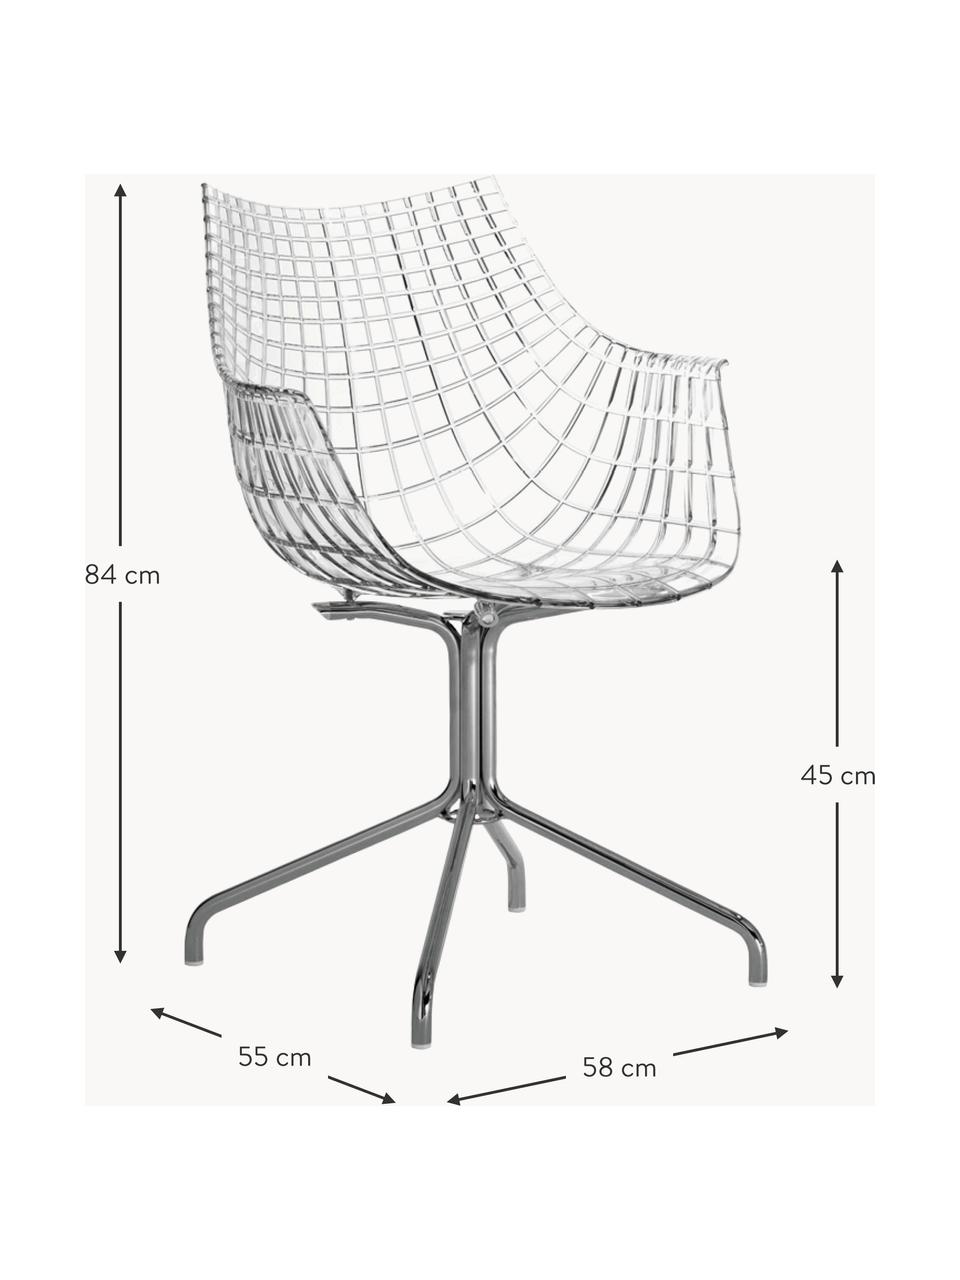 Drehbarer Kunststoffstuhl Meridiana, Sitzfläche: Kunststoff, Beine: Stahl, verchromt, Transparent, Silberfarben, B 58 x T 55 cm